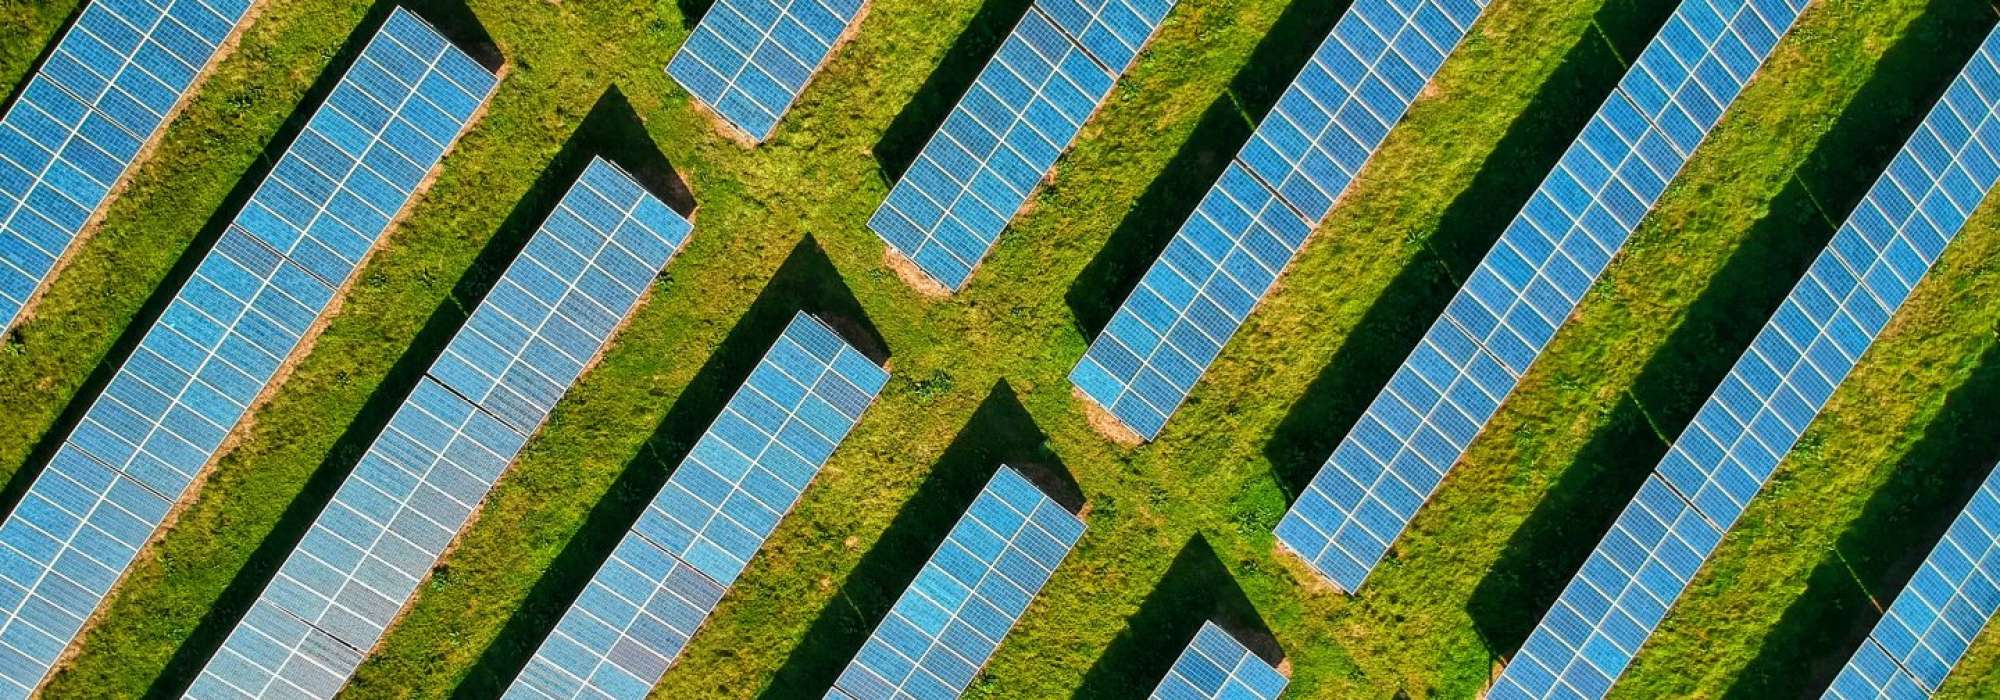 Solar panels on a farm building